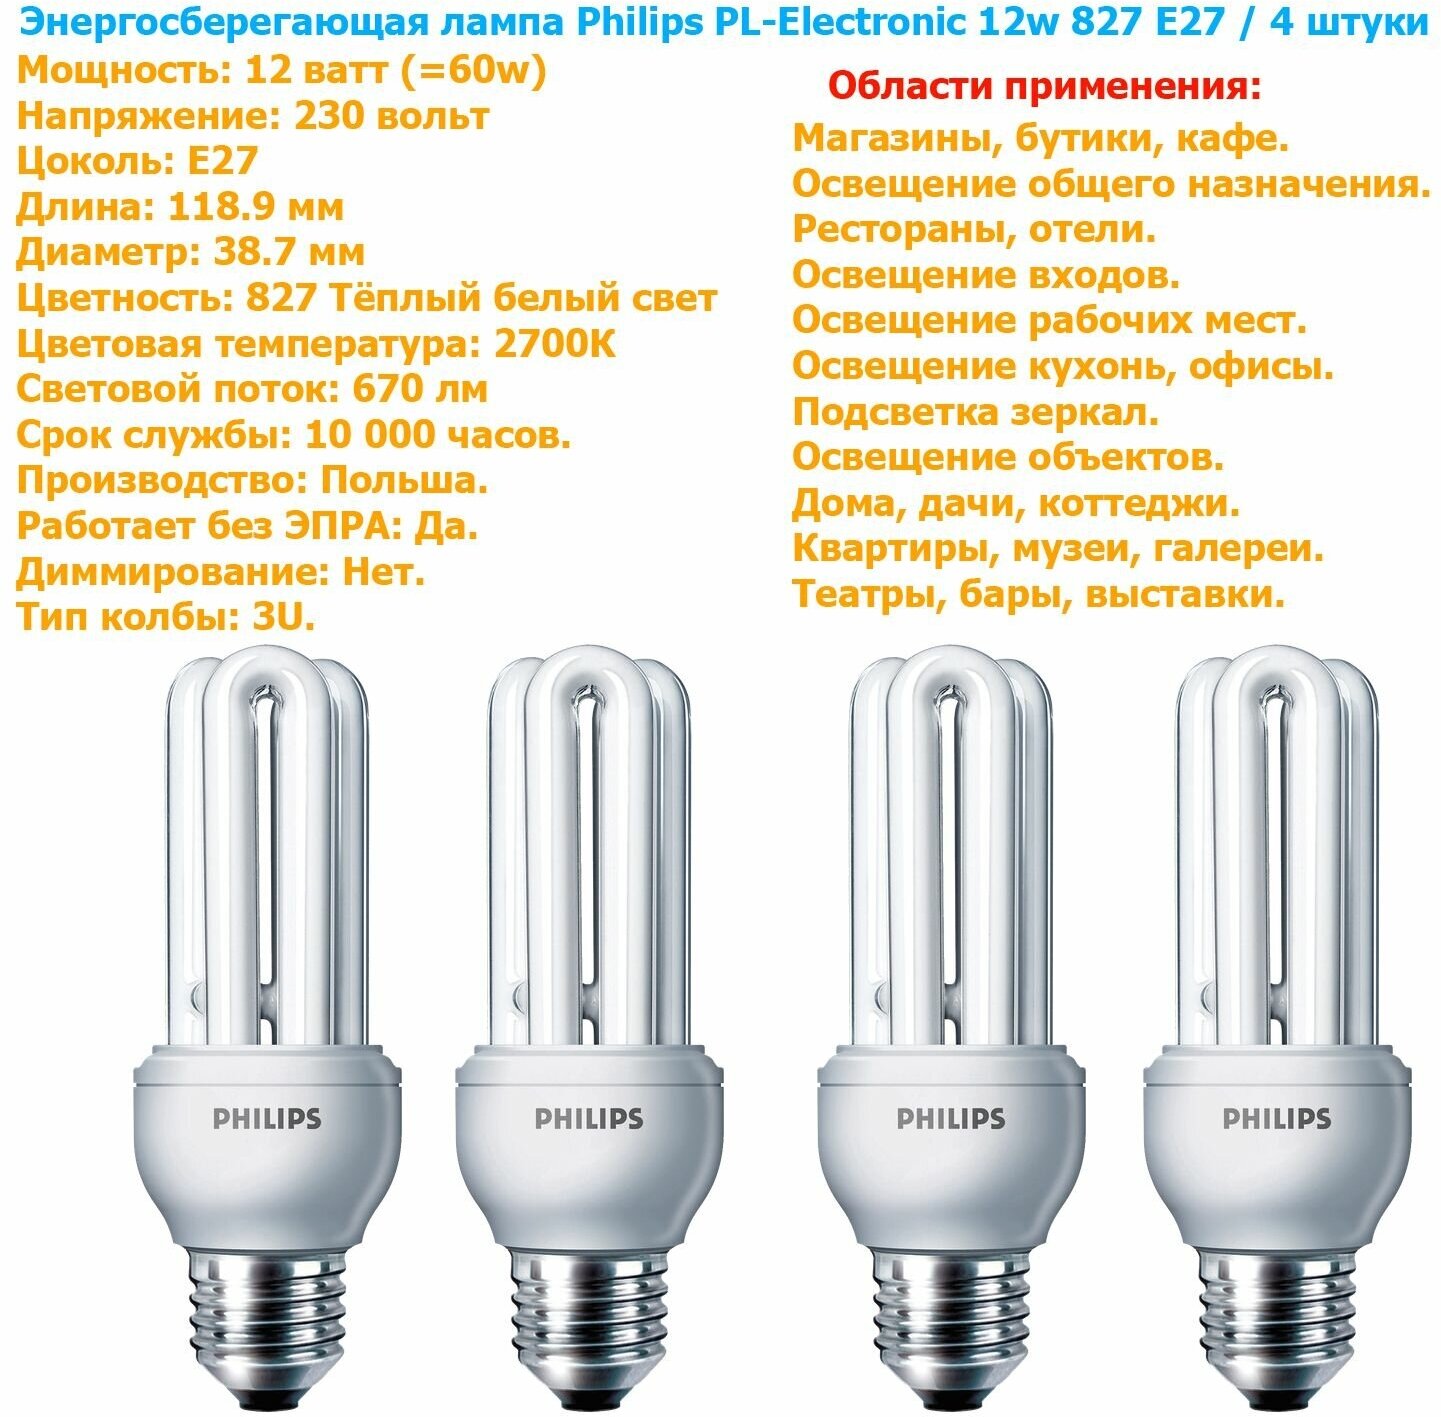 Лампочка Philips U-Series PL-Electronic 12w 827 E27 энергосберегающая, тёплый белый свет / 4 штуки